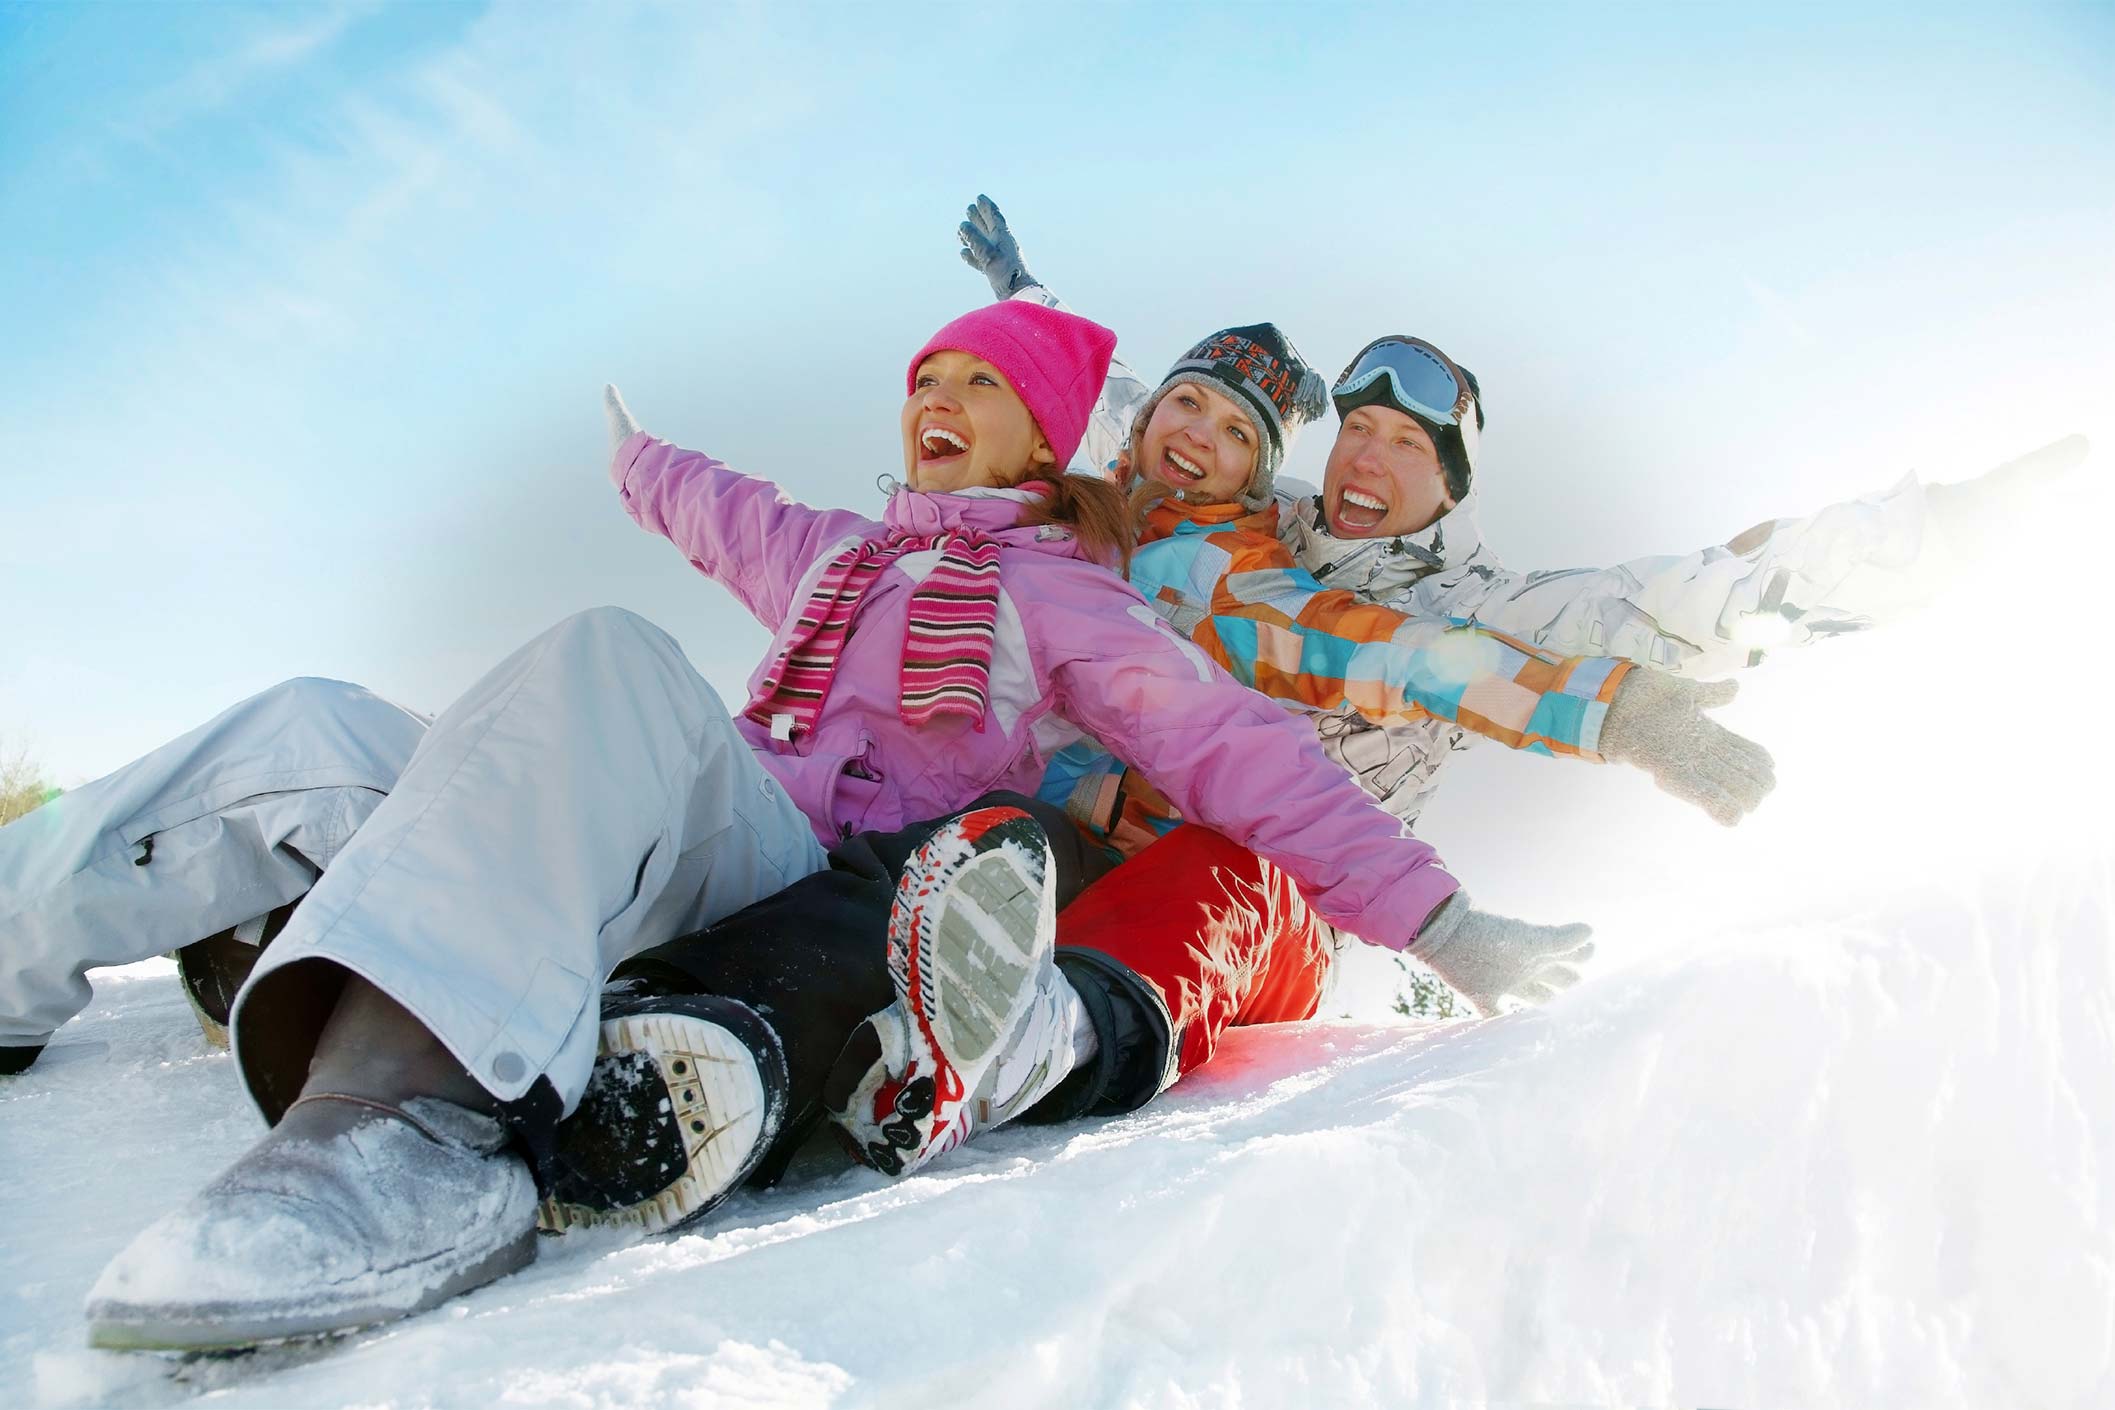 Отдых спорт и развлечение. Зимние развлечения. Развлечения зимой. Семейные развлечения зимой. Спортивная семья зимой.